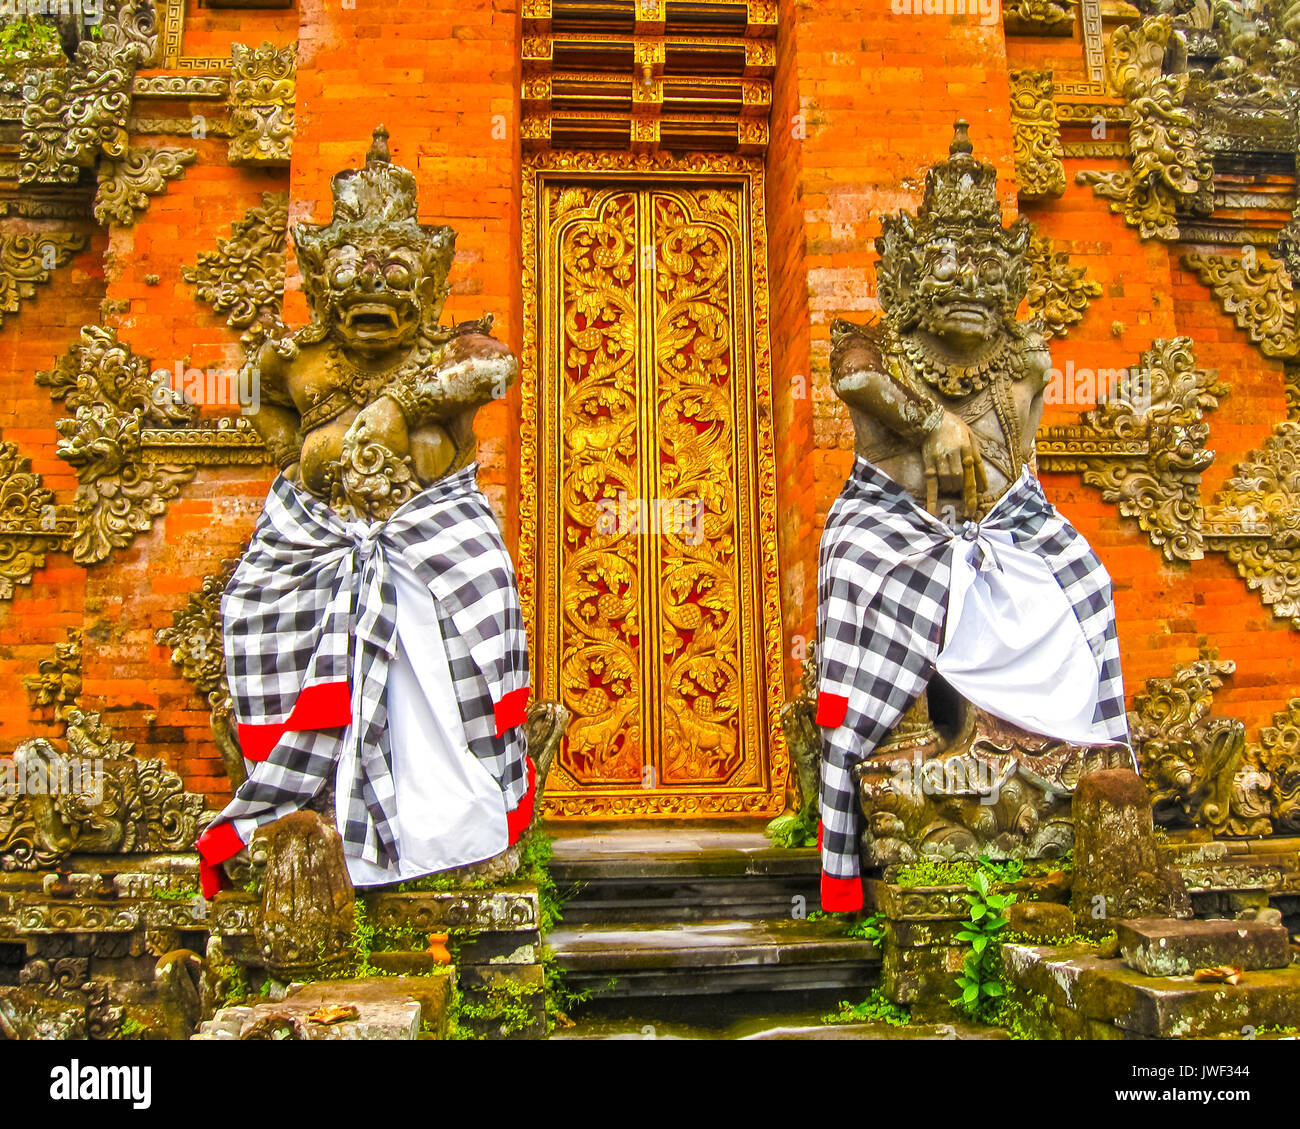 The traditional temple door in Ubud, Bali, Iindonesia Stock Photo